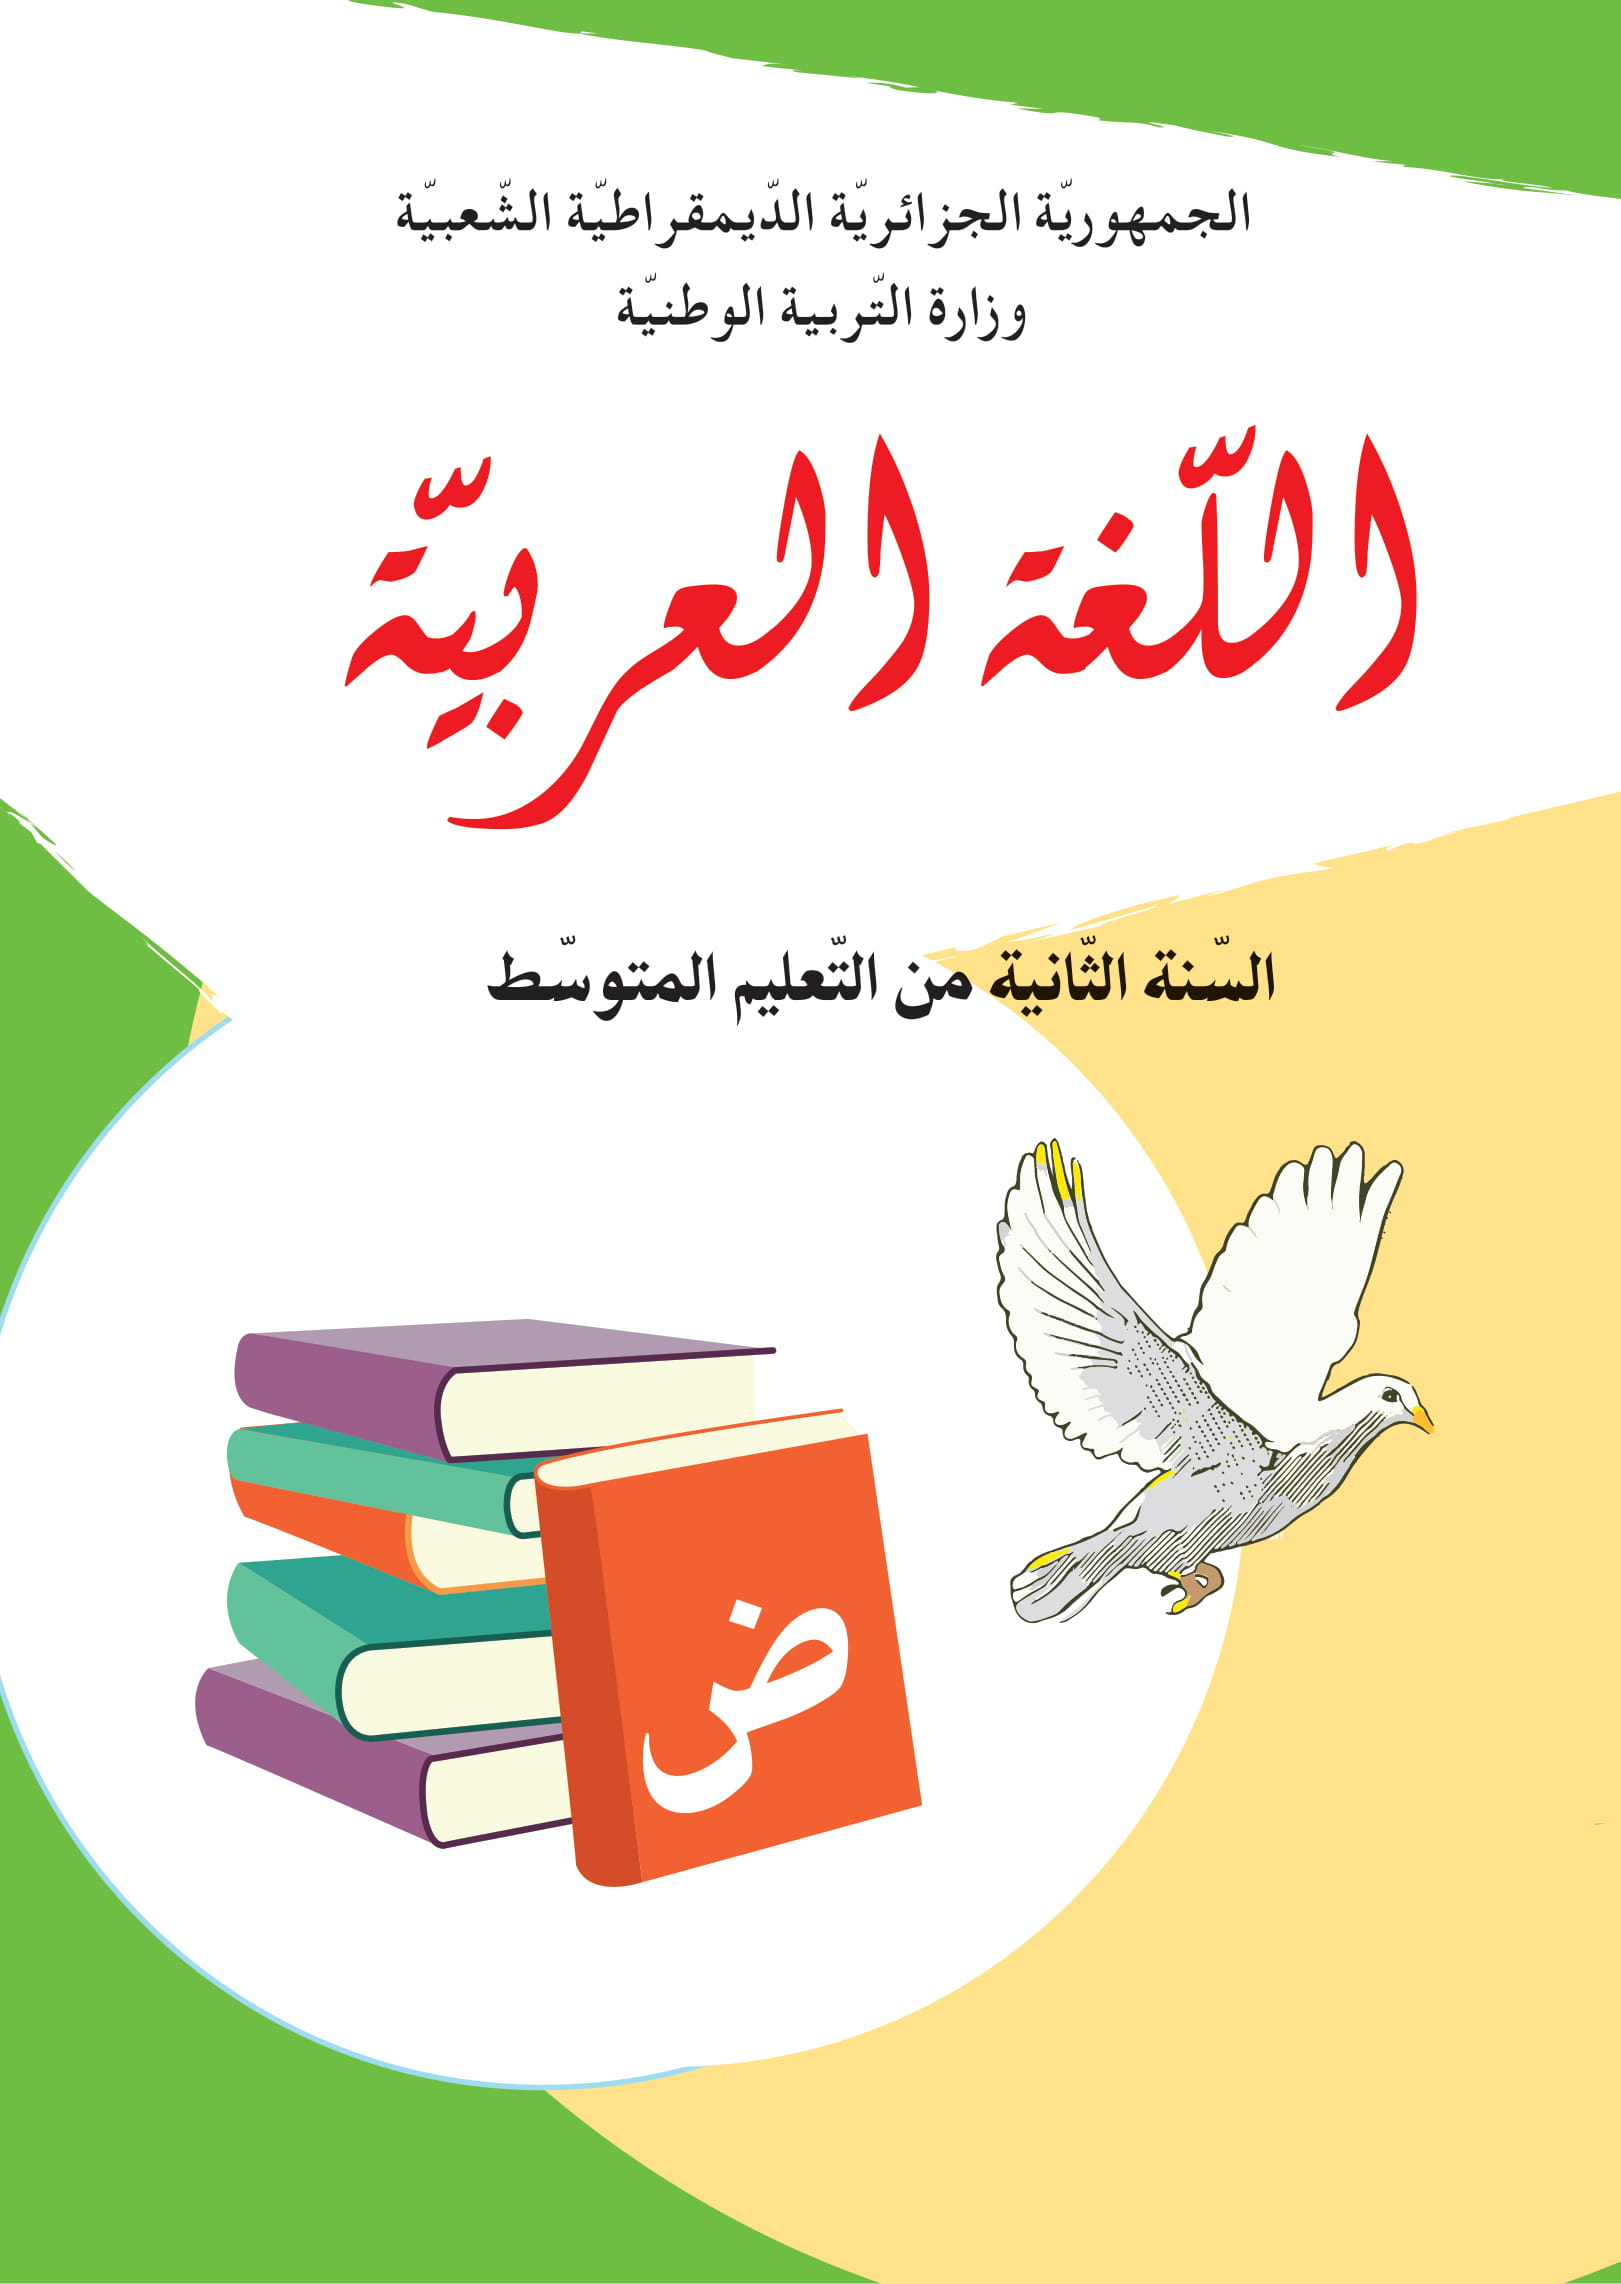 MS 801 couverture arabe 2am 1 - الديوان الوطني للمطبوعات المدرسية